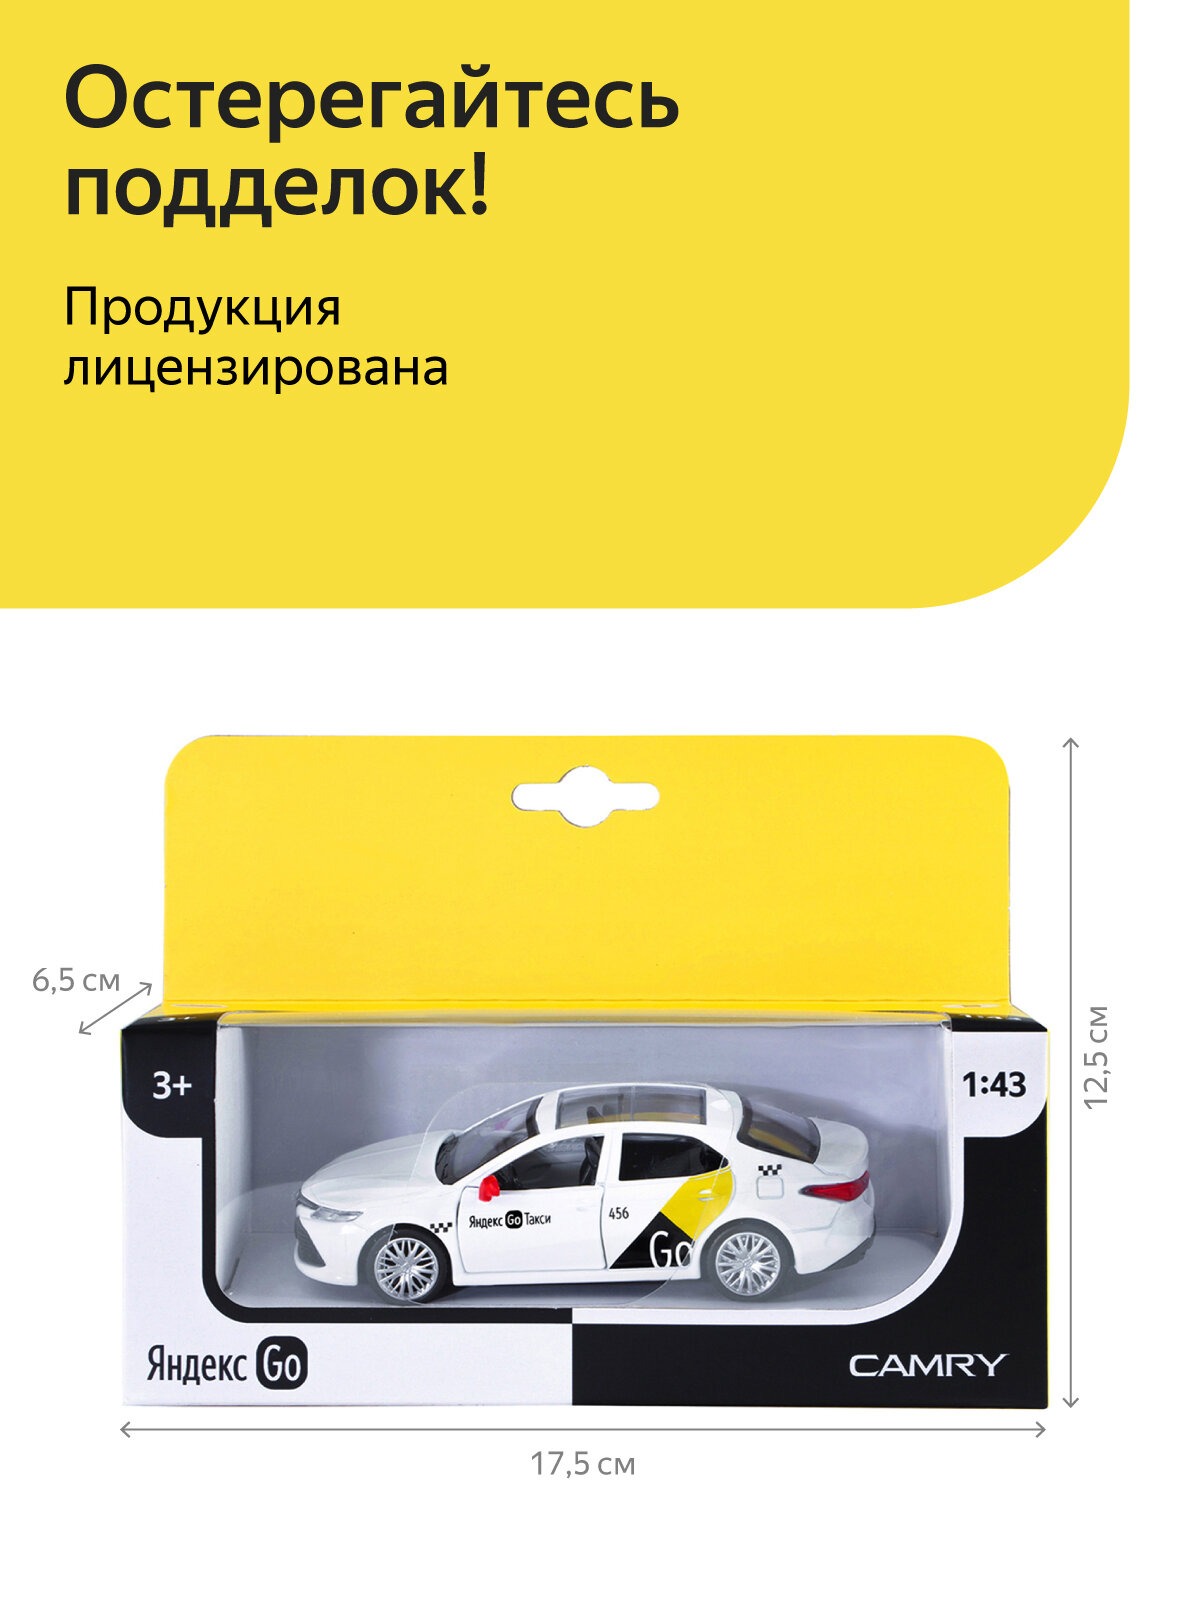 Машинка металлическая Яндекс GO 1:43 Toyota Camry озвучено Алисой цвет белый JB1251484 - фото 3